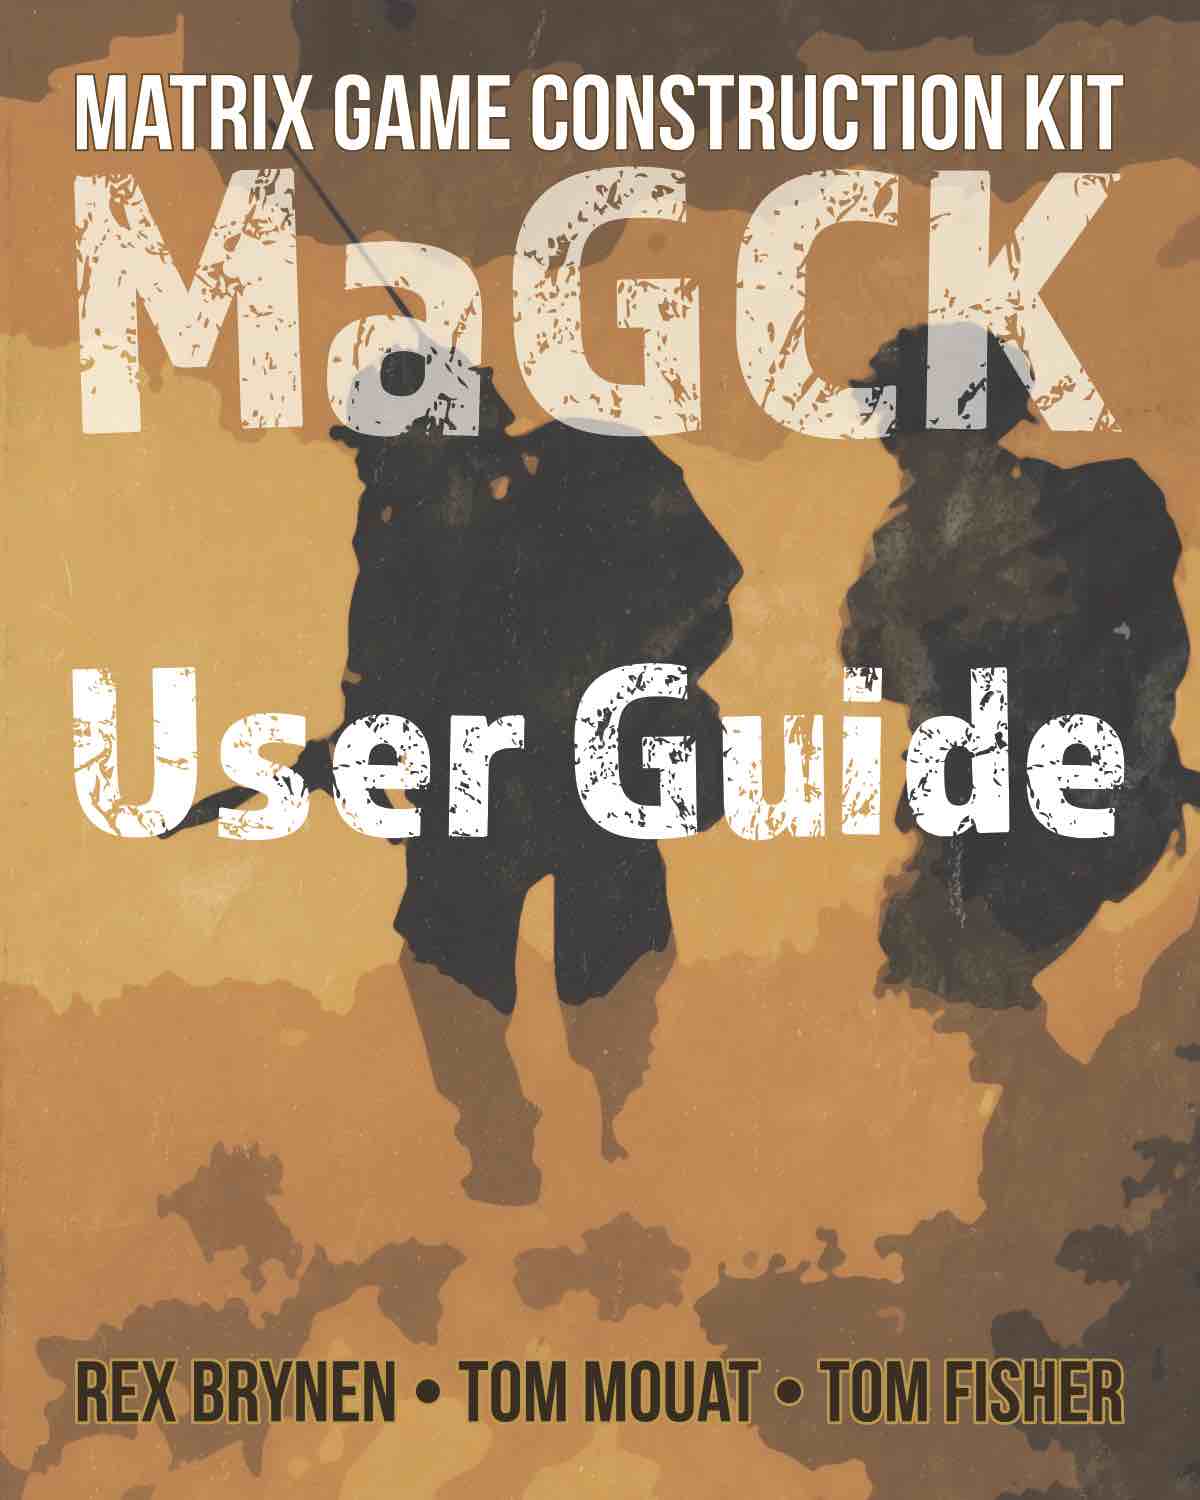 MaGCK User Guide PDF.jpg